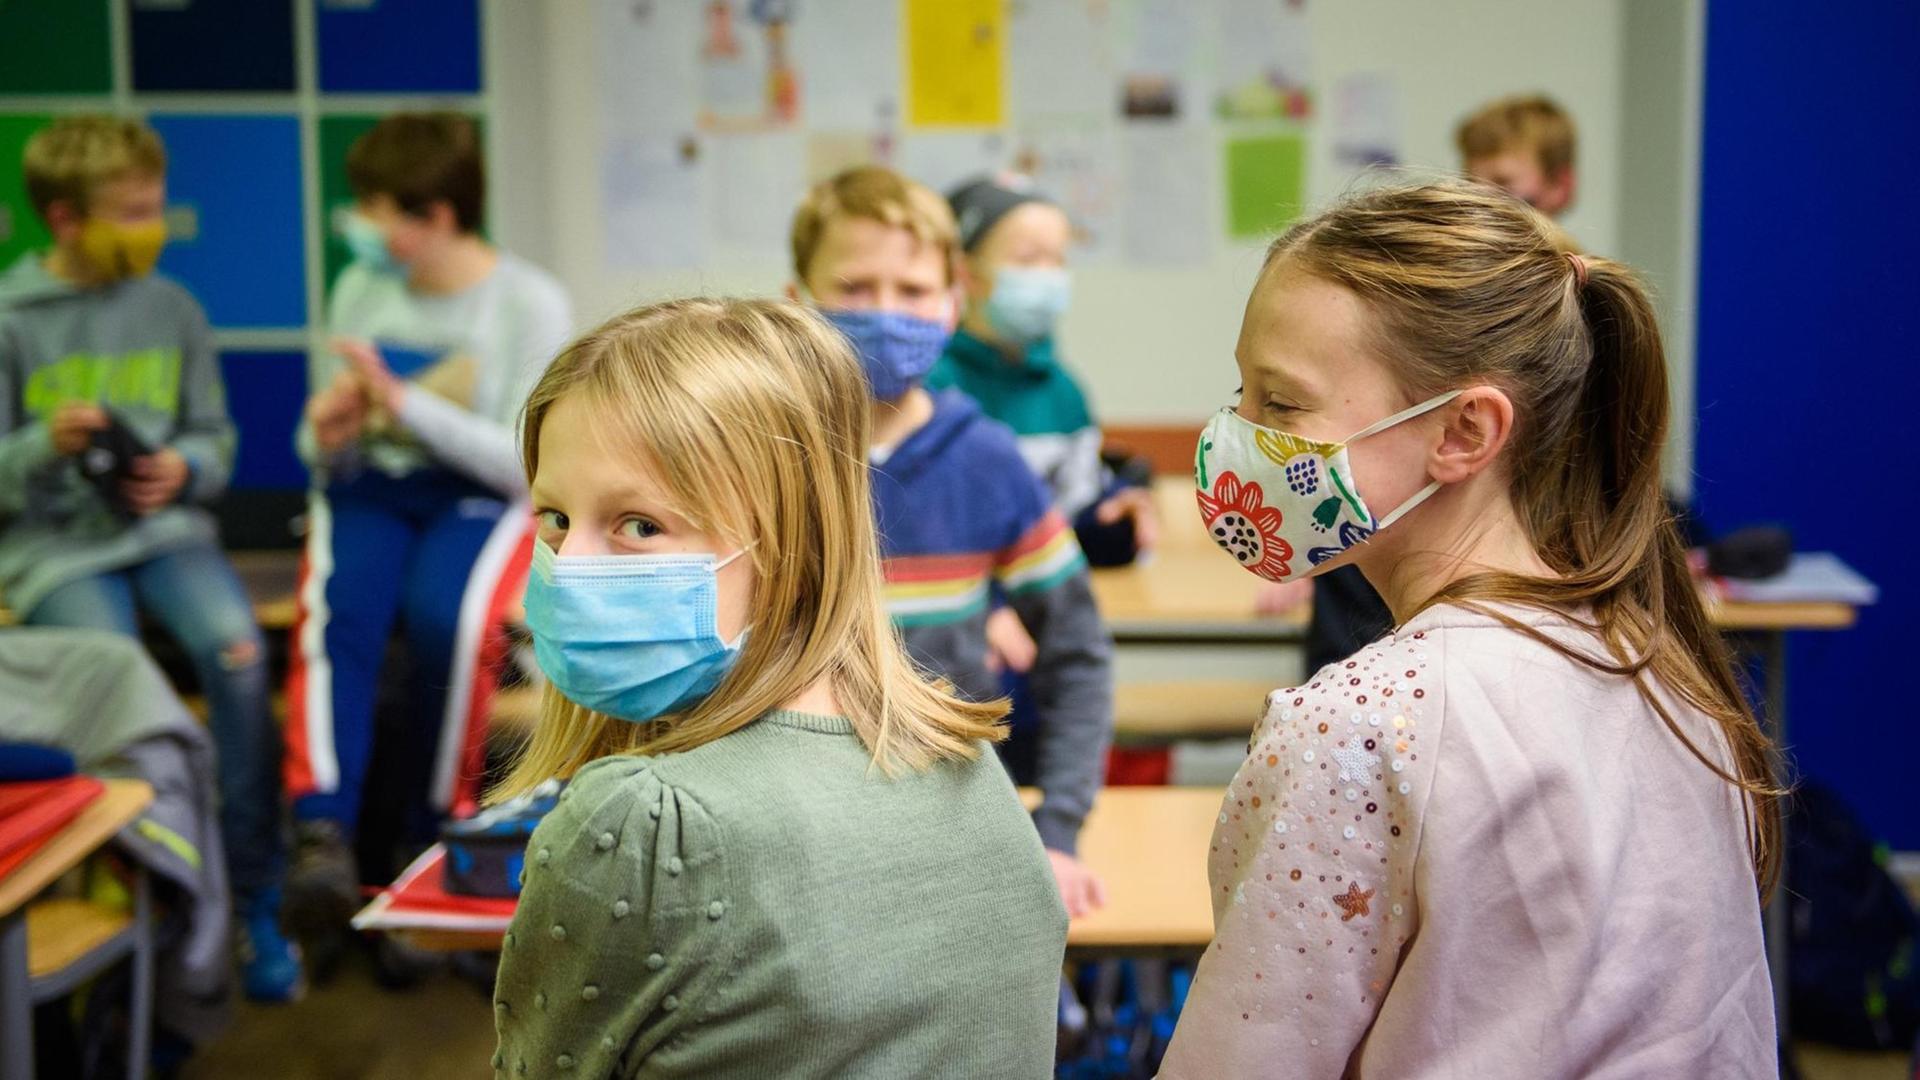 Schülerinnen und Schüler einer sechsten Klasse der Max-Planck-Schule Kiel warten in ihrem Klassenzimmer auf den Unterrichtsbeginn nach den Herbstferien und tragen dabei einen Mund-Nasen-Schutz.